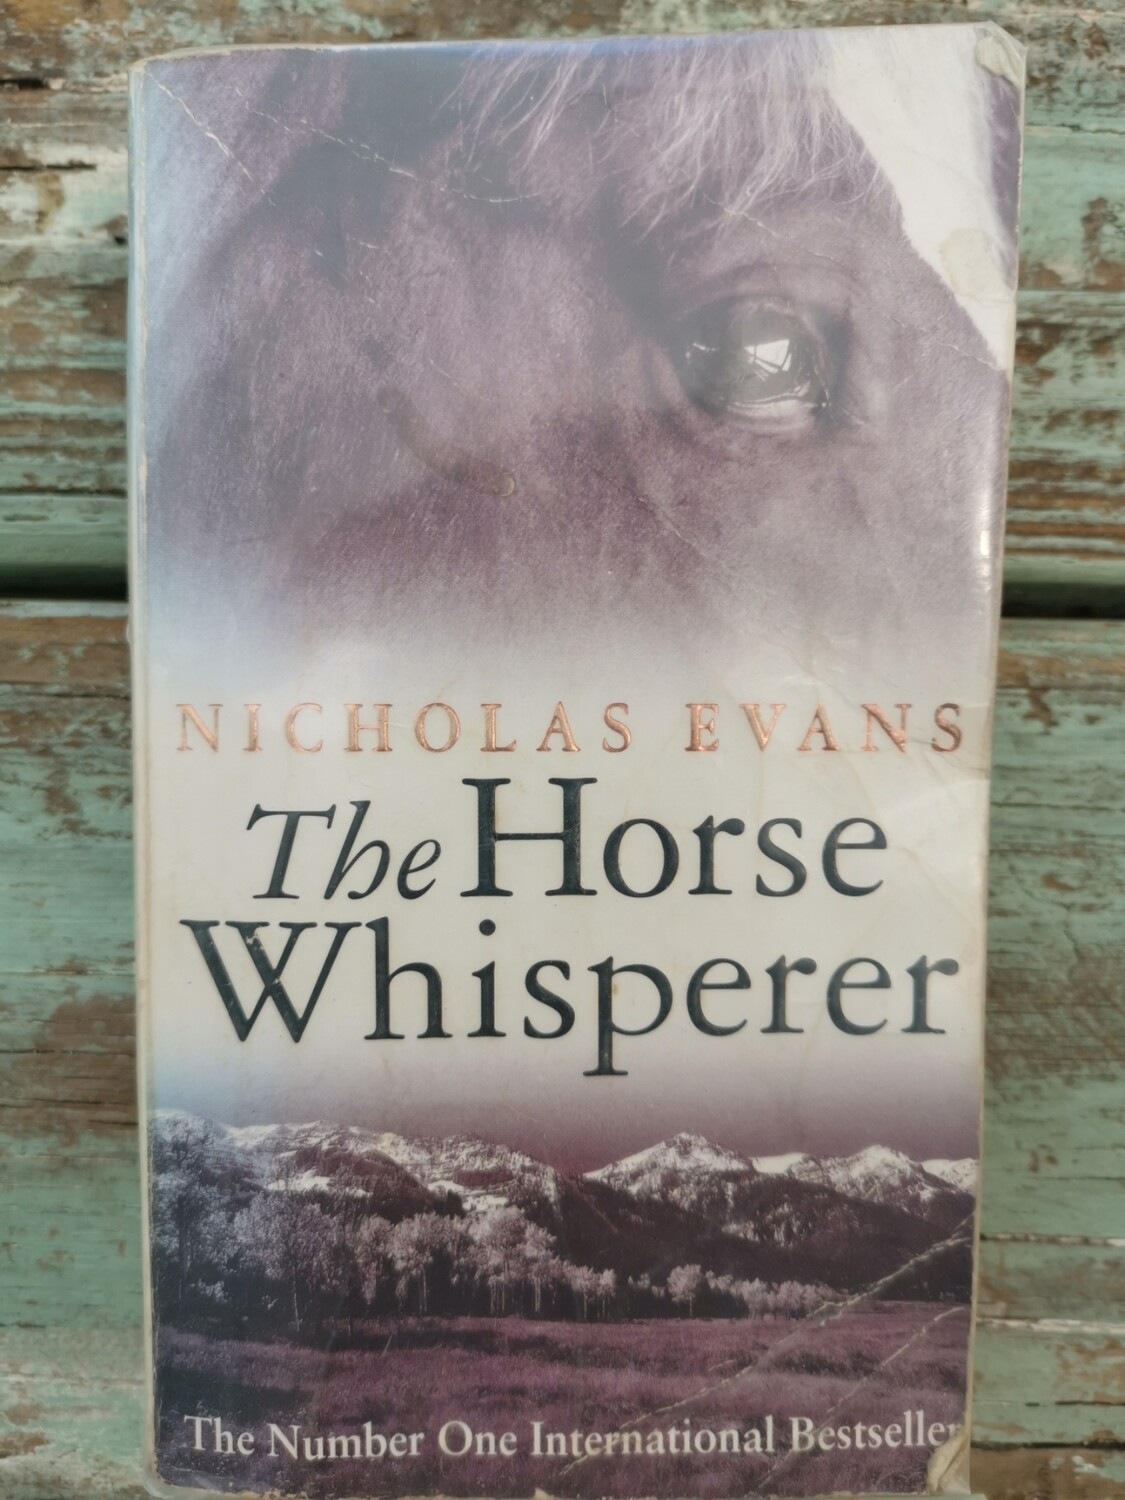 The horse whisperer, Nicholas Evans